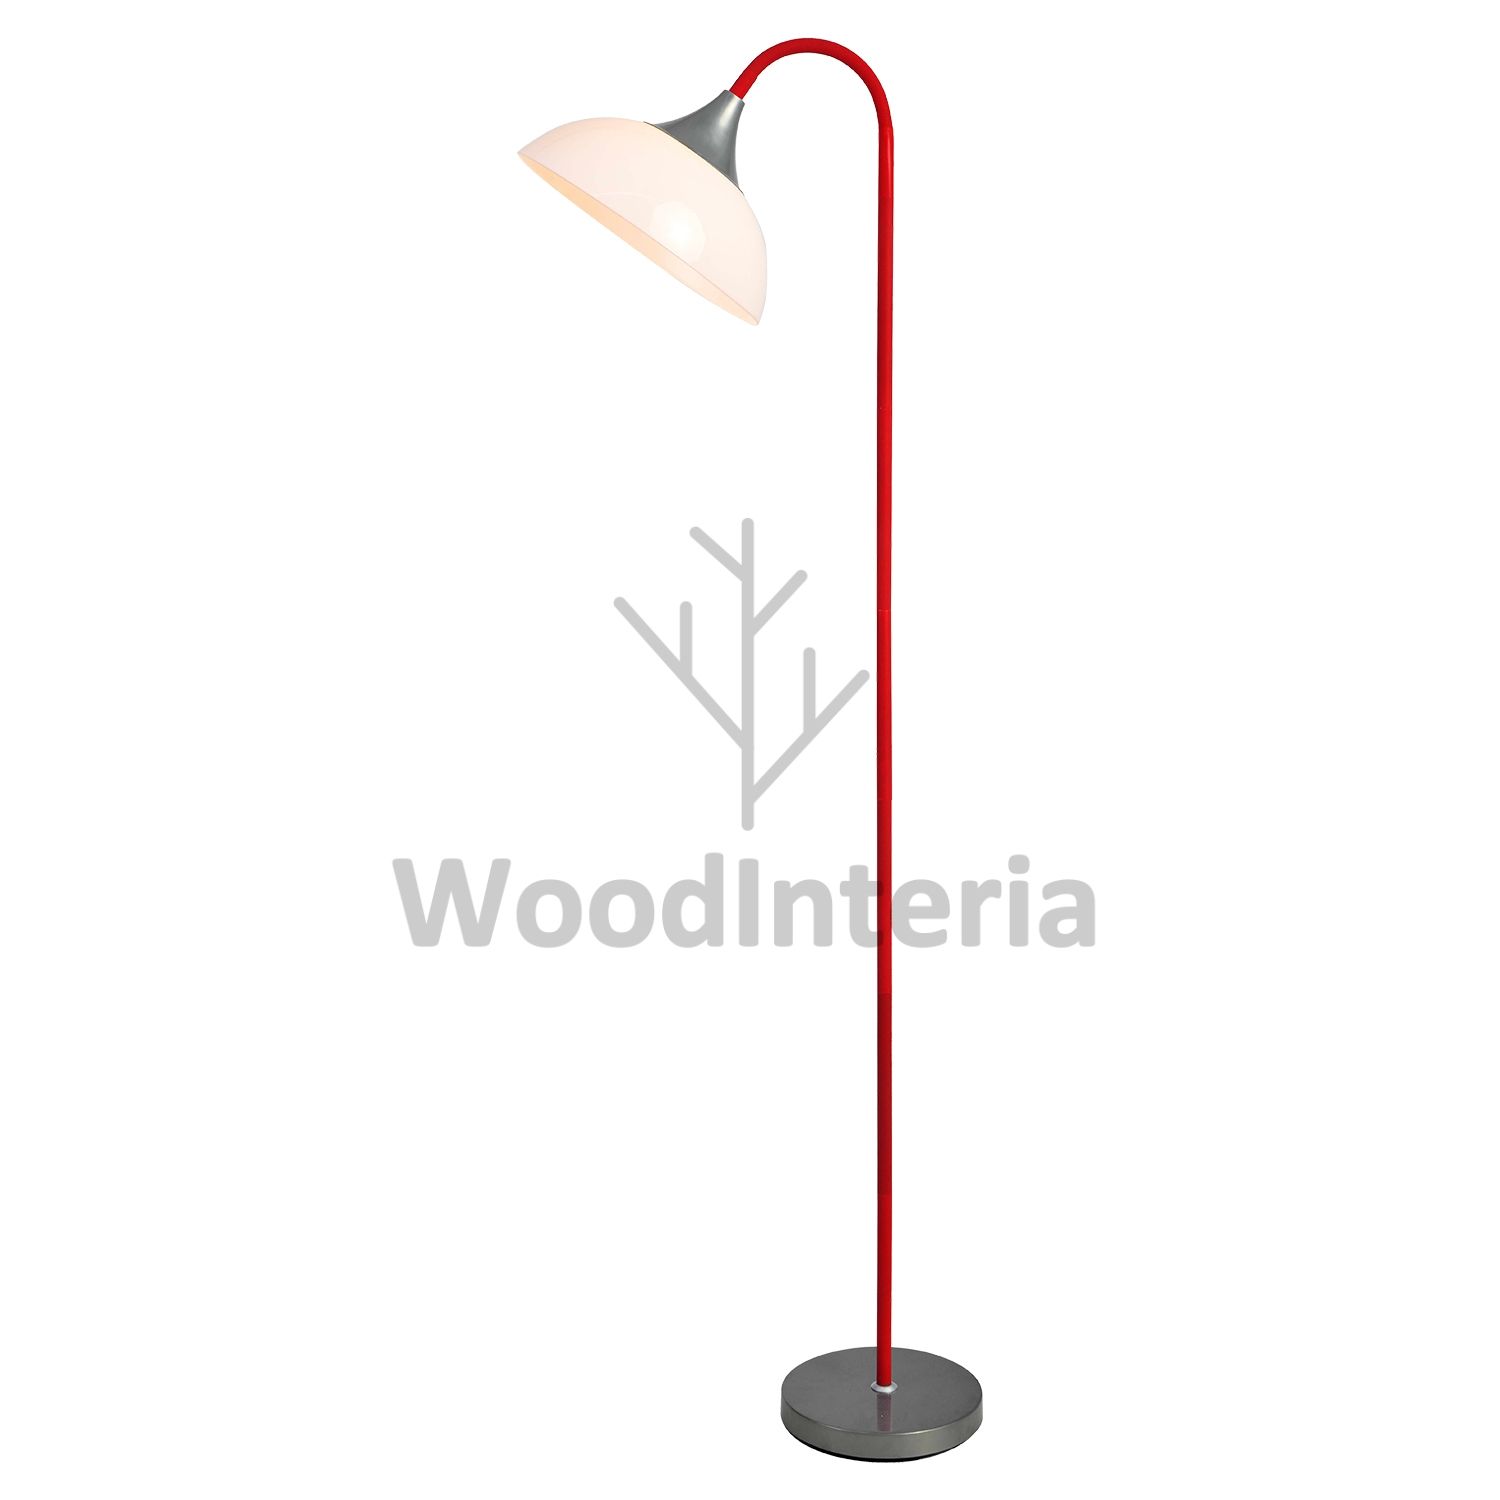 фото напольная лампа umbrella handle red в скандинавском интерьере лофт эко | WoodInteria